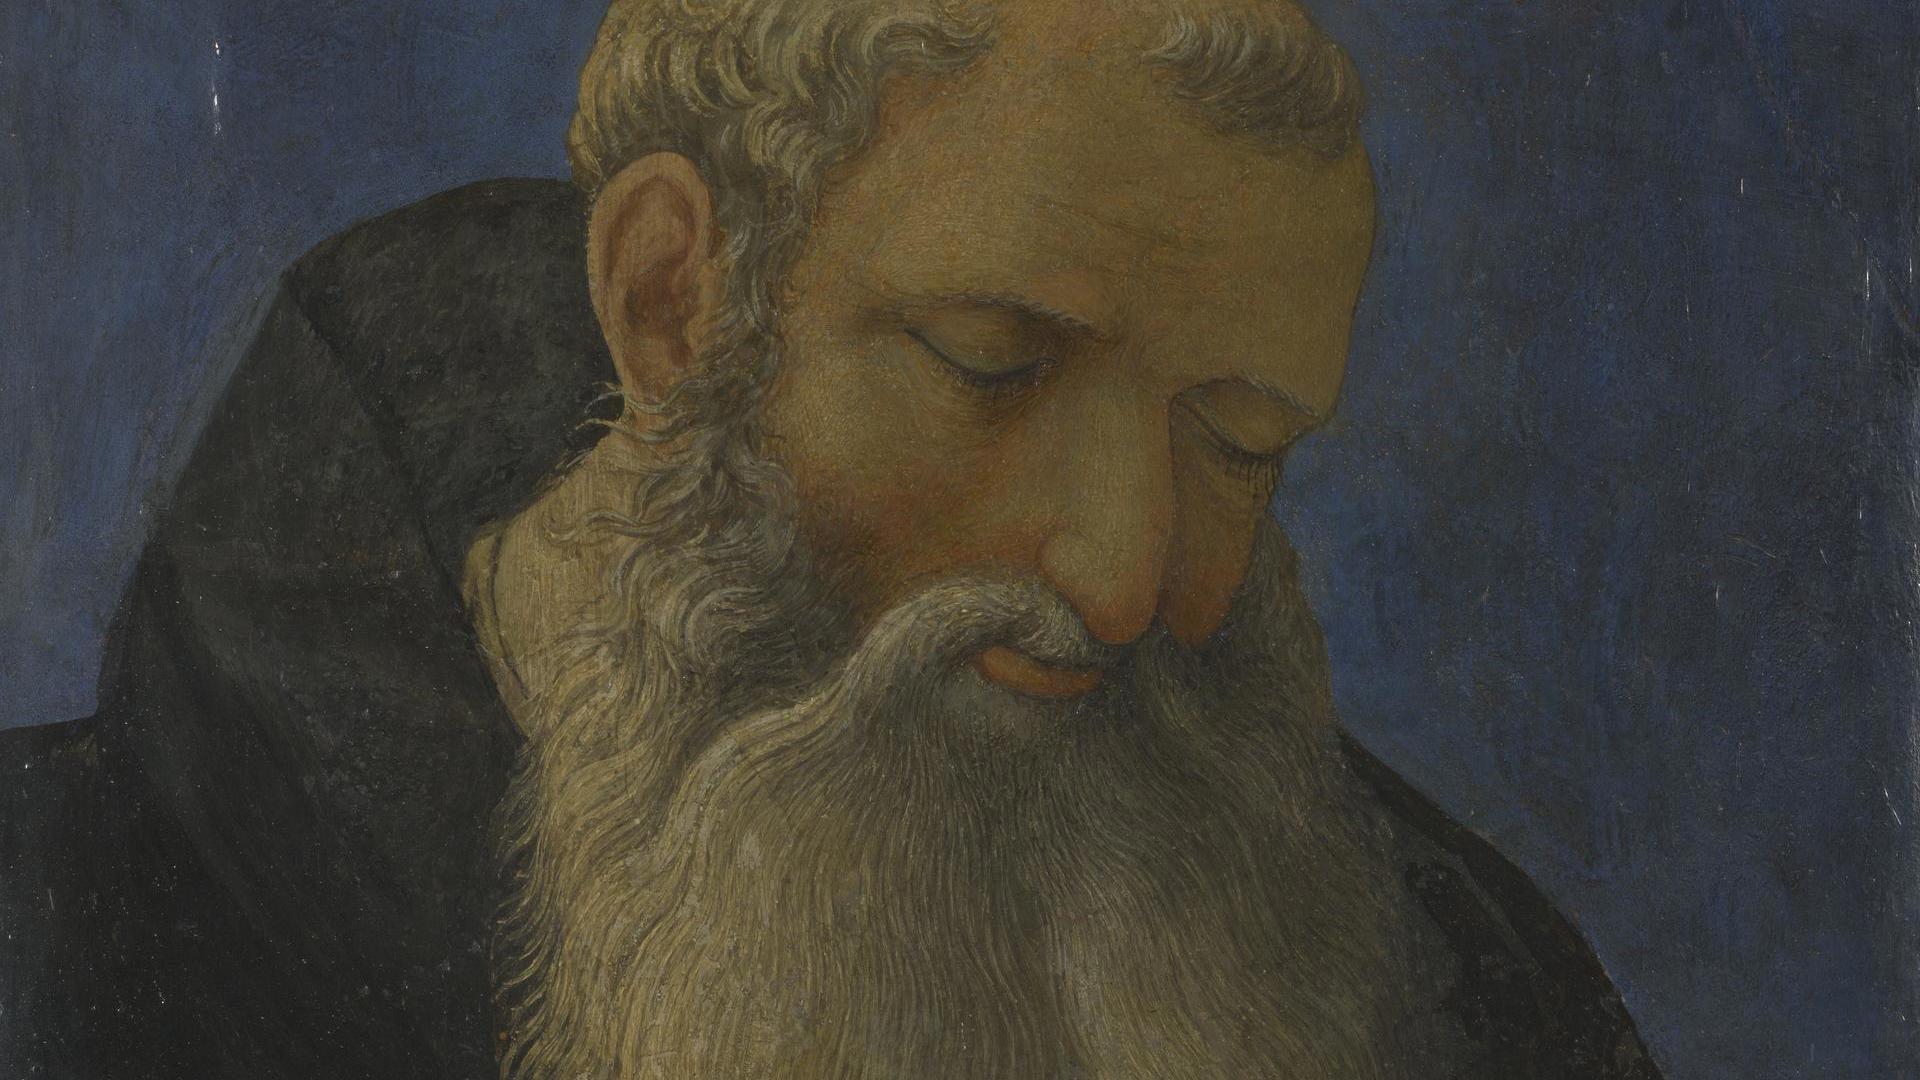 Head of a Tonsured, Bearded Saint by Domenico Veneziano